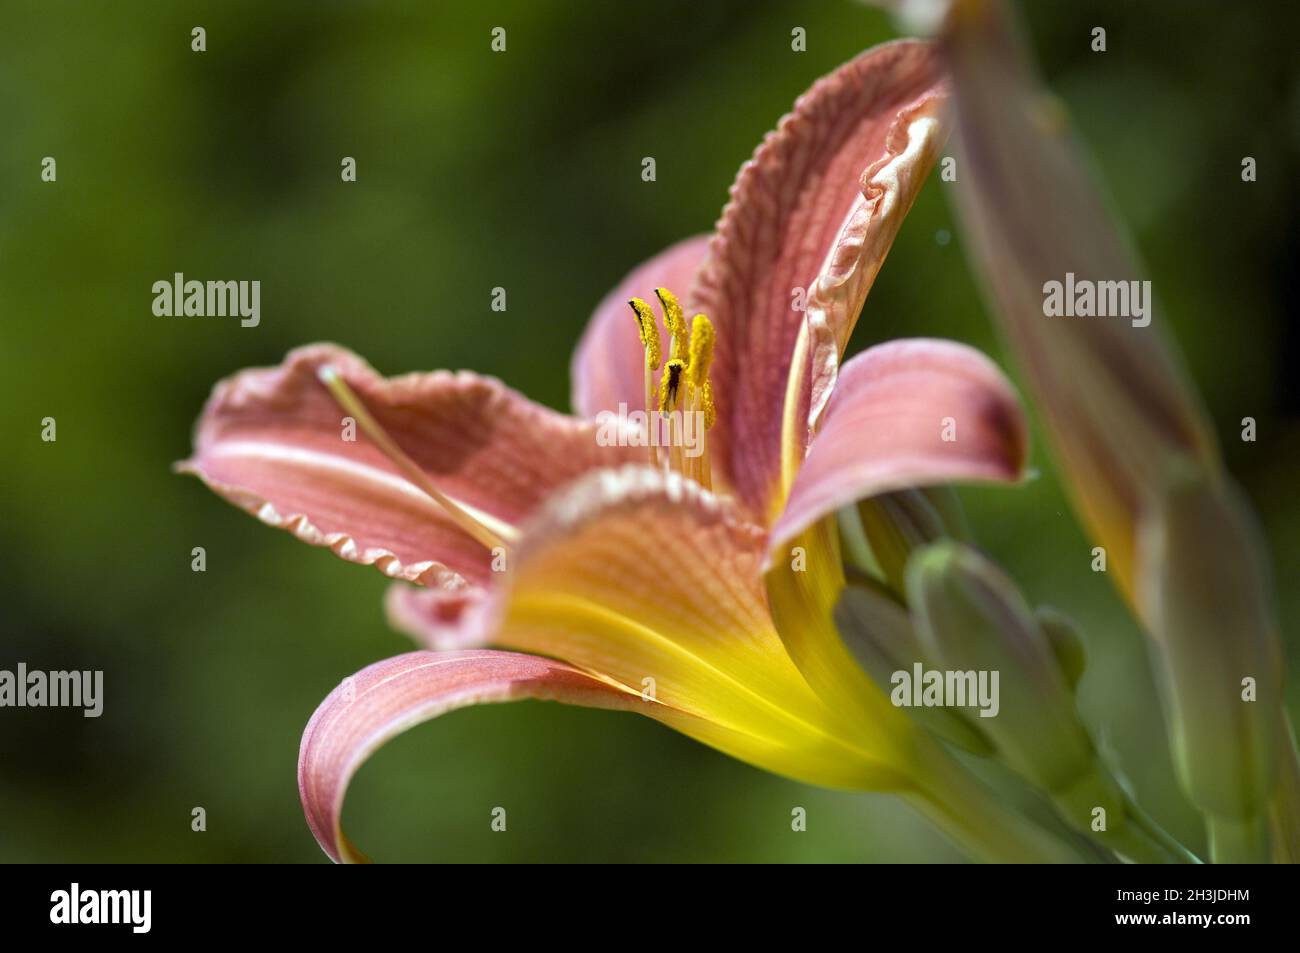 Marigolds, Hemerocallis, Foto de stock